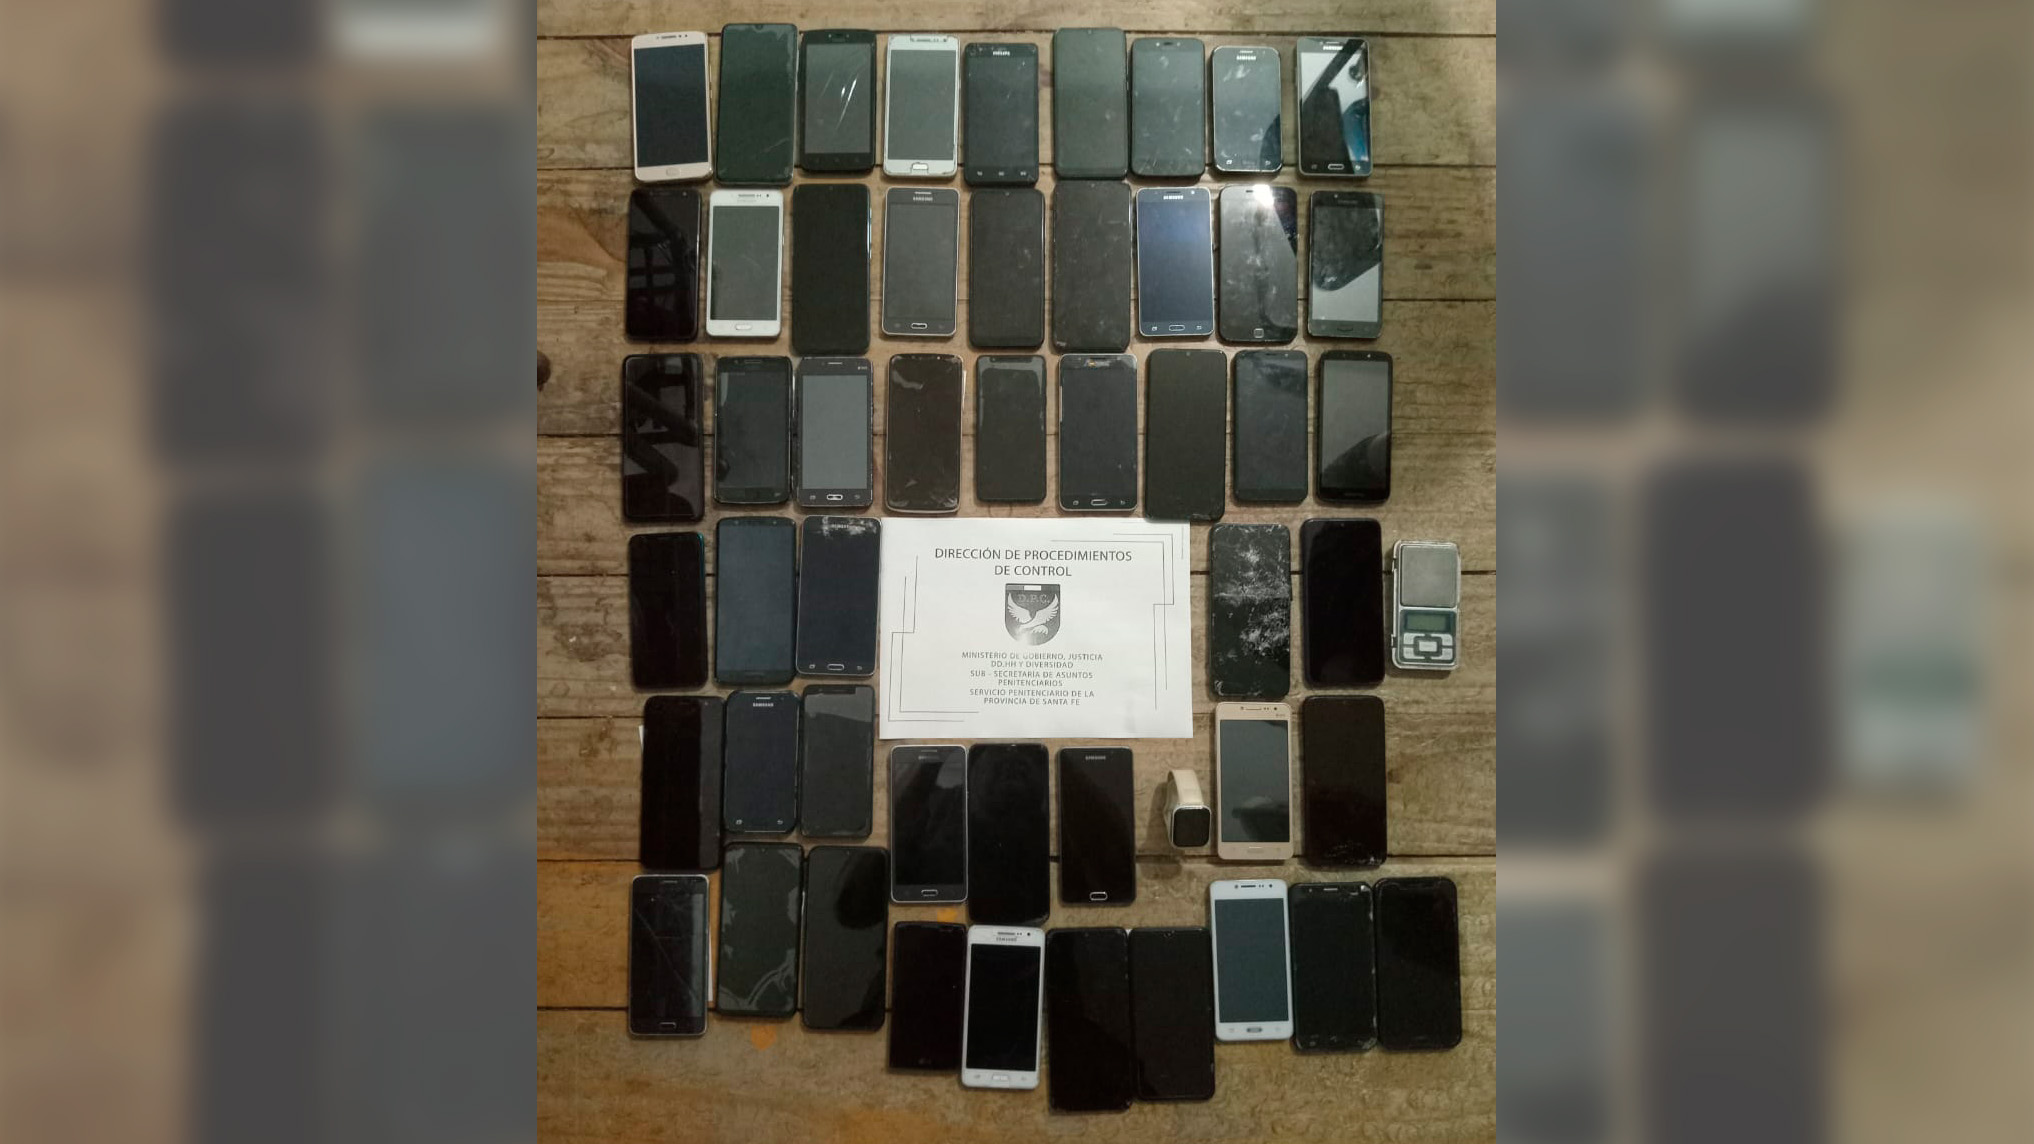 Secuestraron 51 celulares a presos federales que están en la cárcel de Coronda de Santa Fe